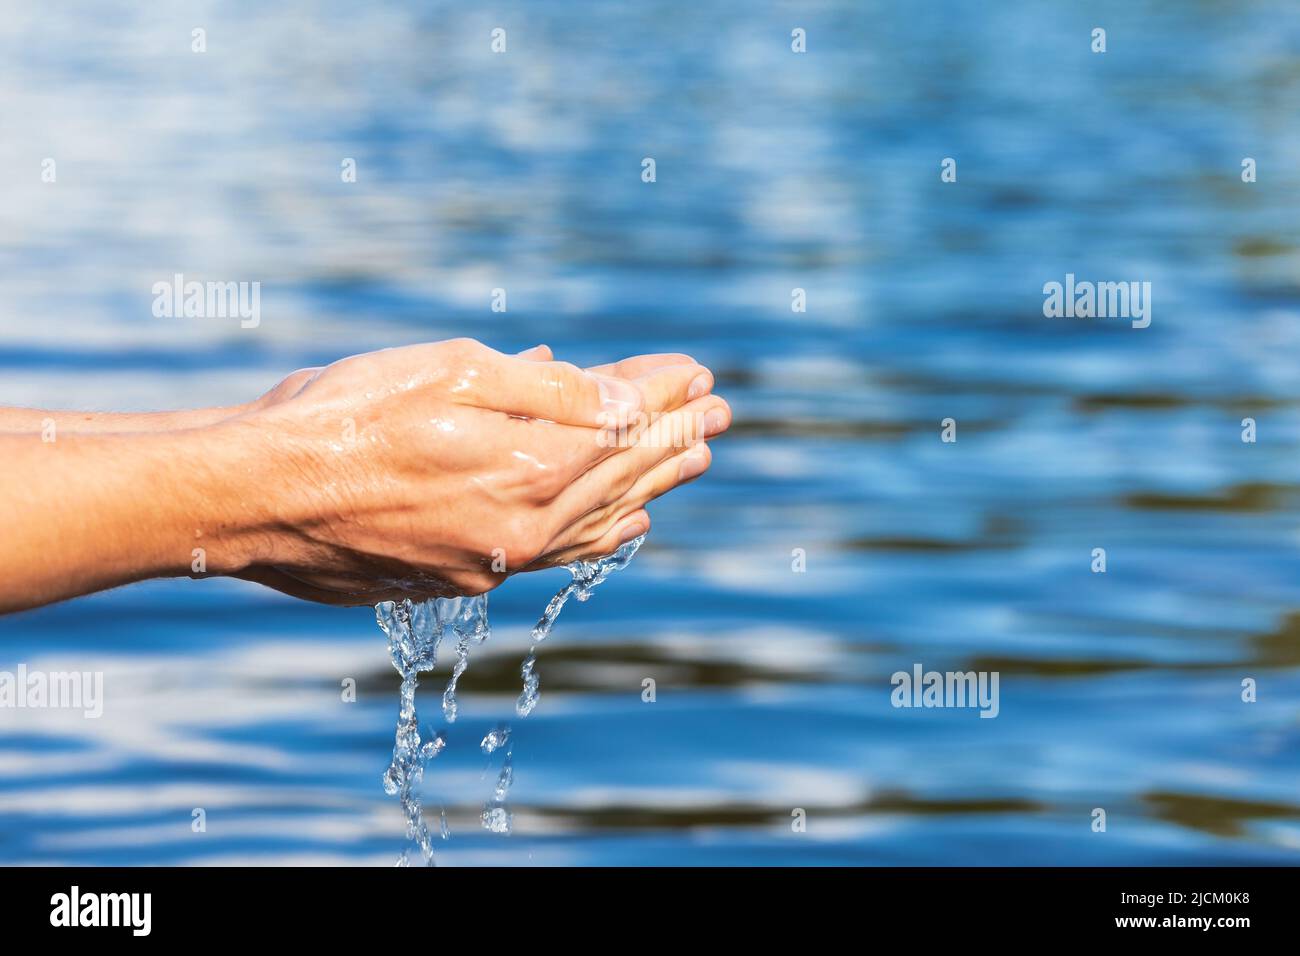 Personne ramasse l'eau brute d'un lac. Concept de sensibilisation à l'environnement des ressources en eau naturelles Banque D'Images